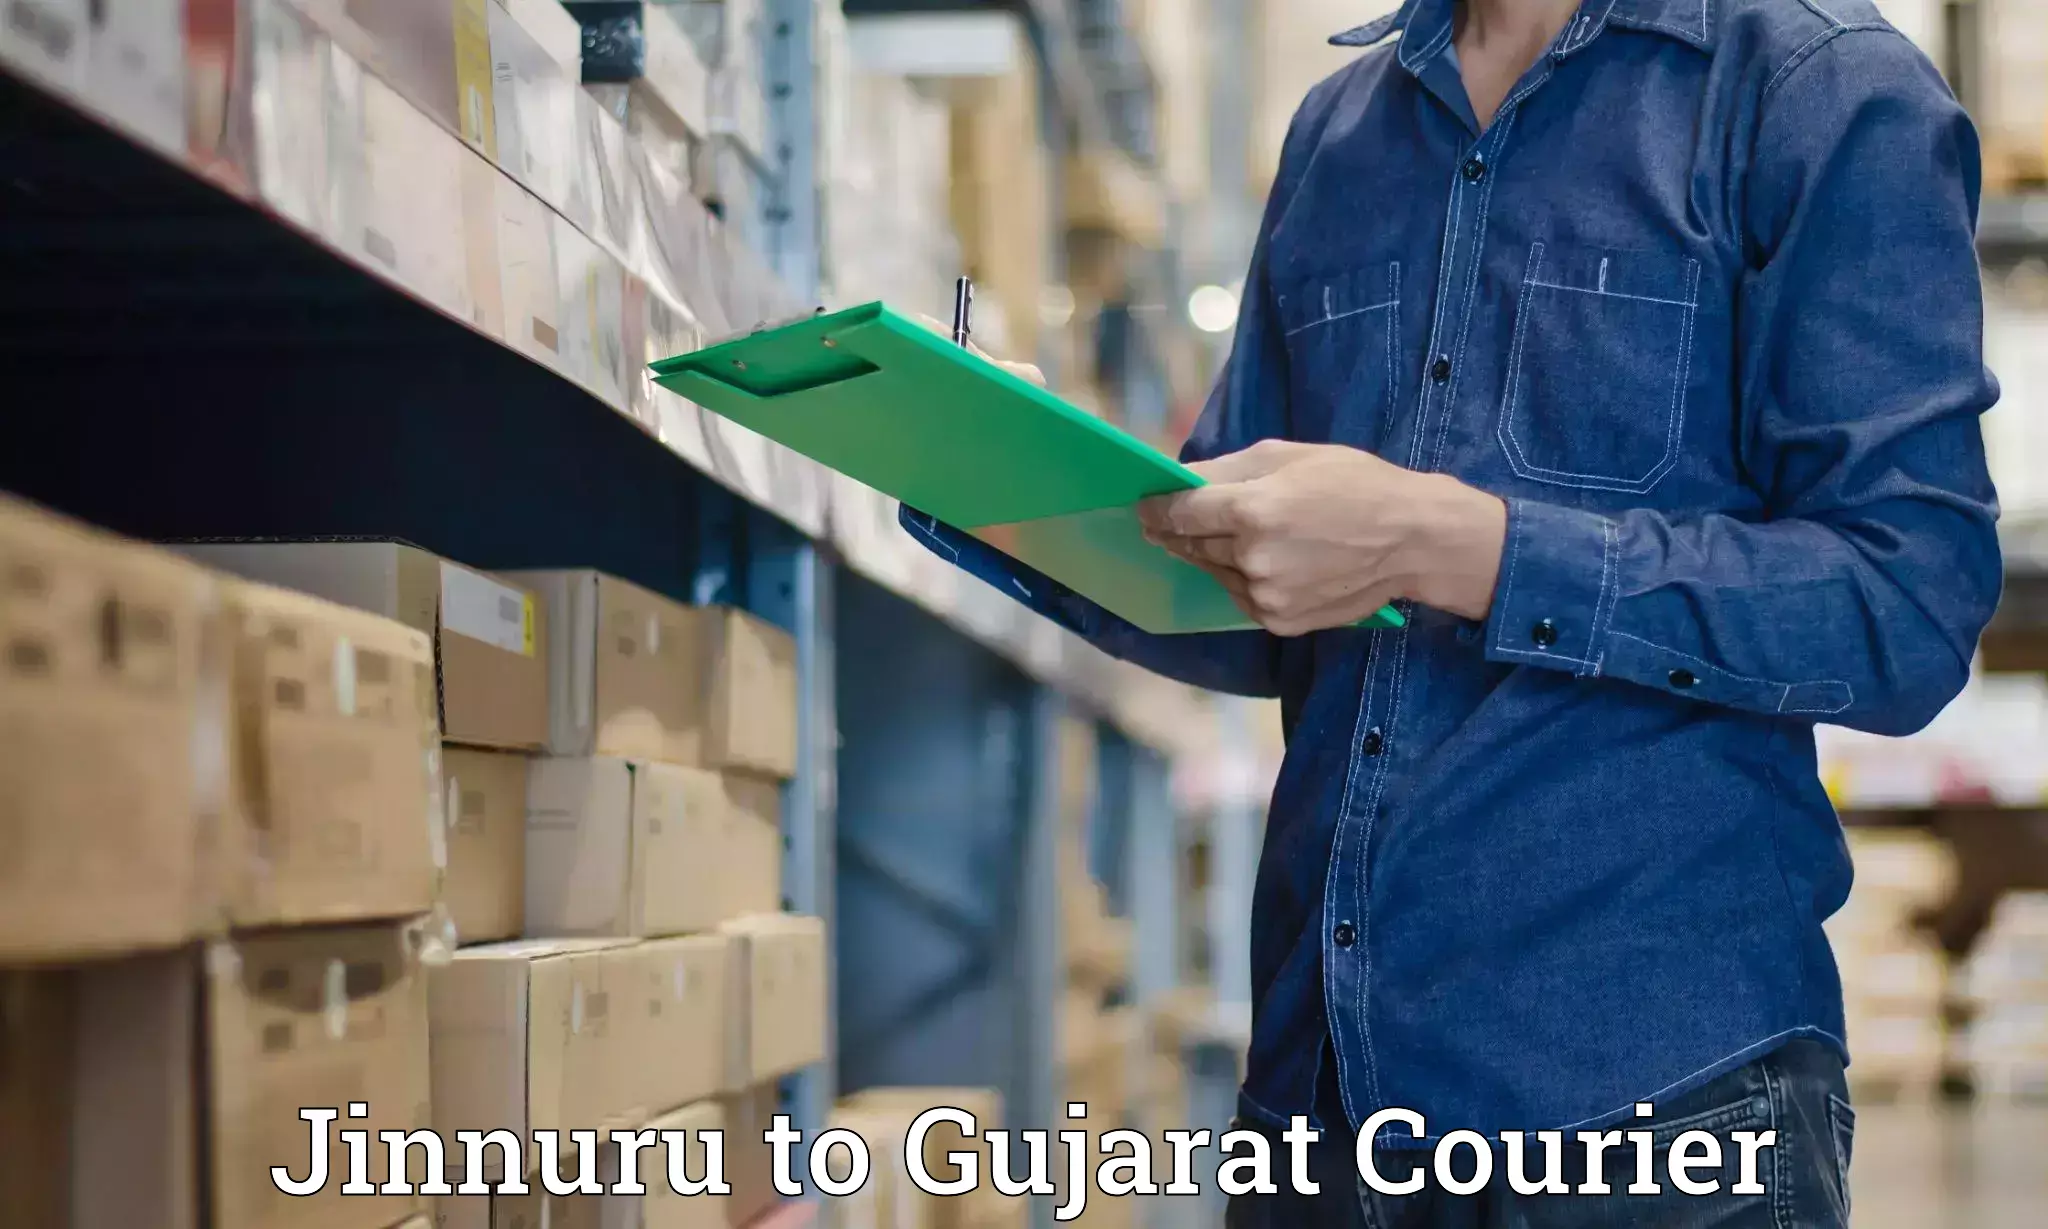 Next-generation courier services Jinnuru to Rajkot